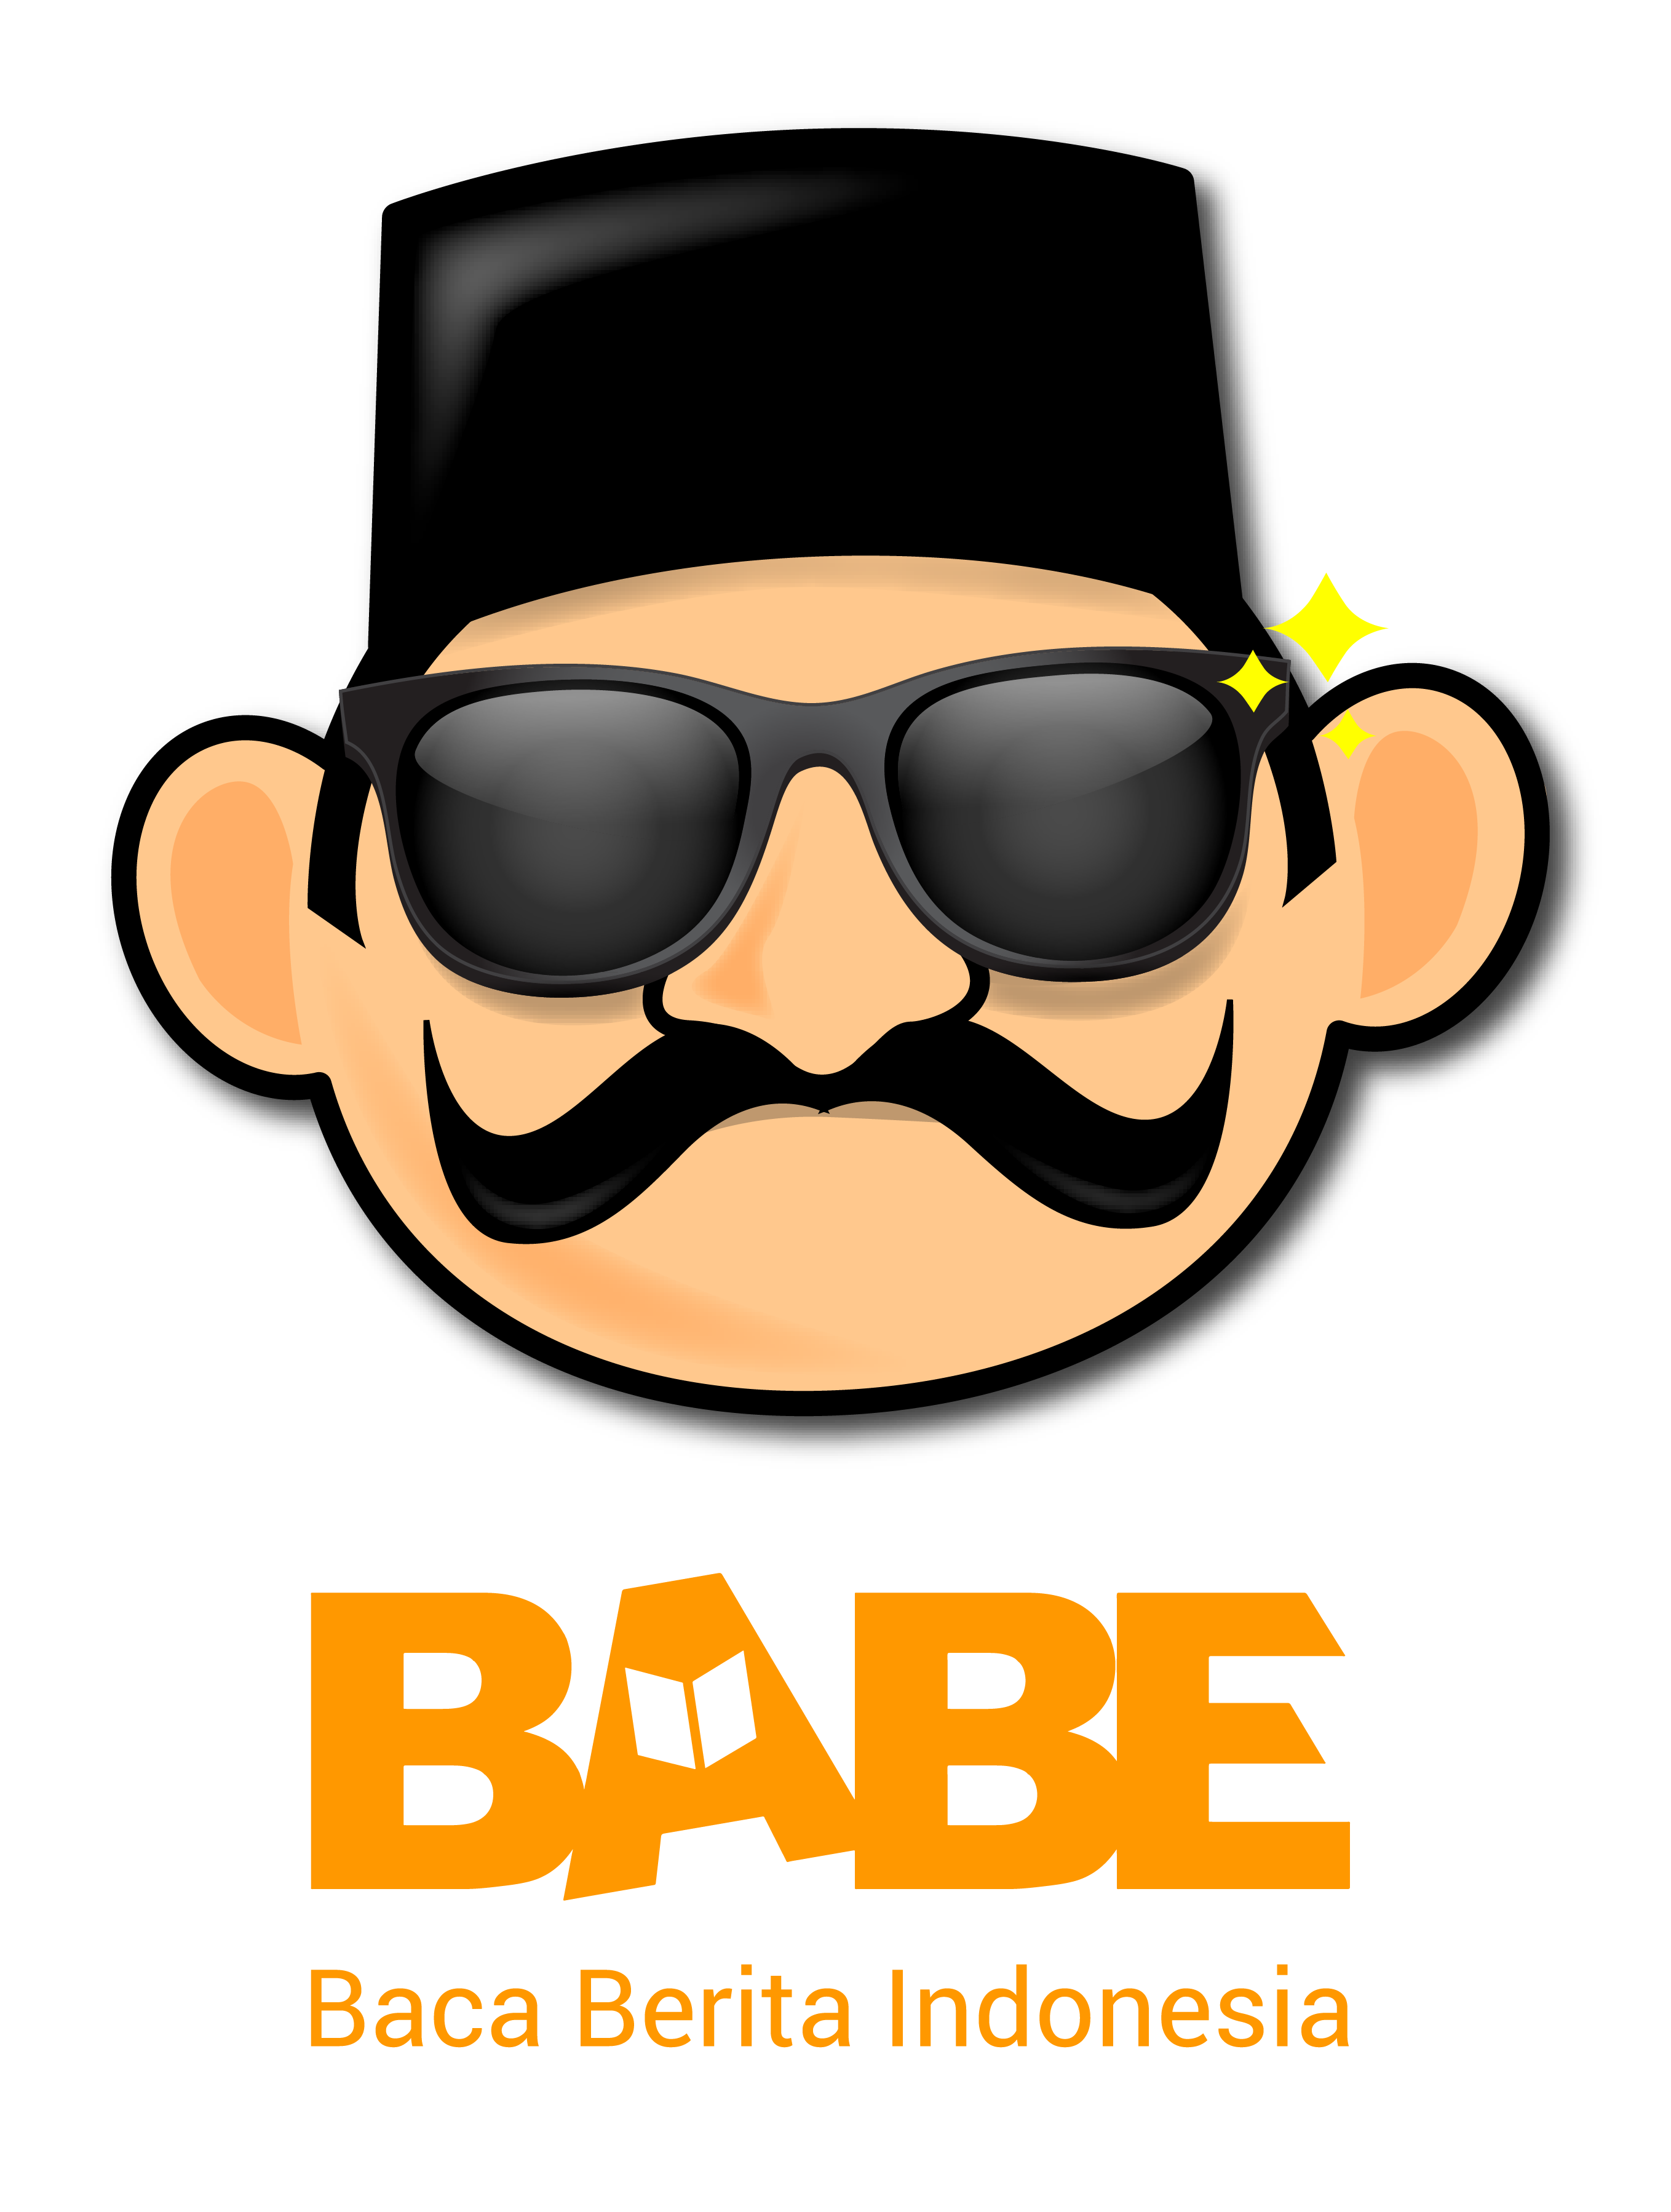 Babe logo png 8 » PNG Image.